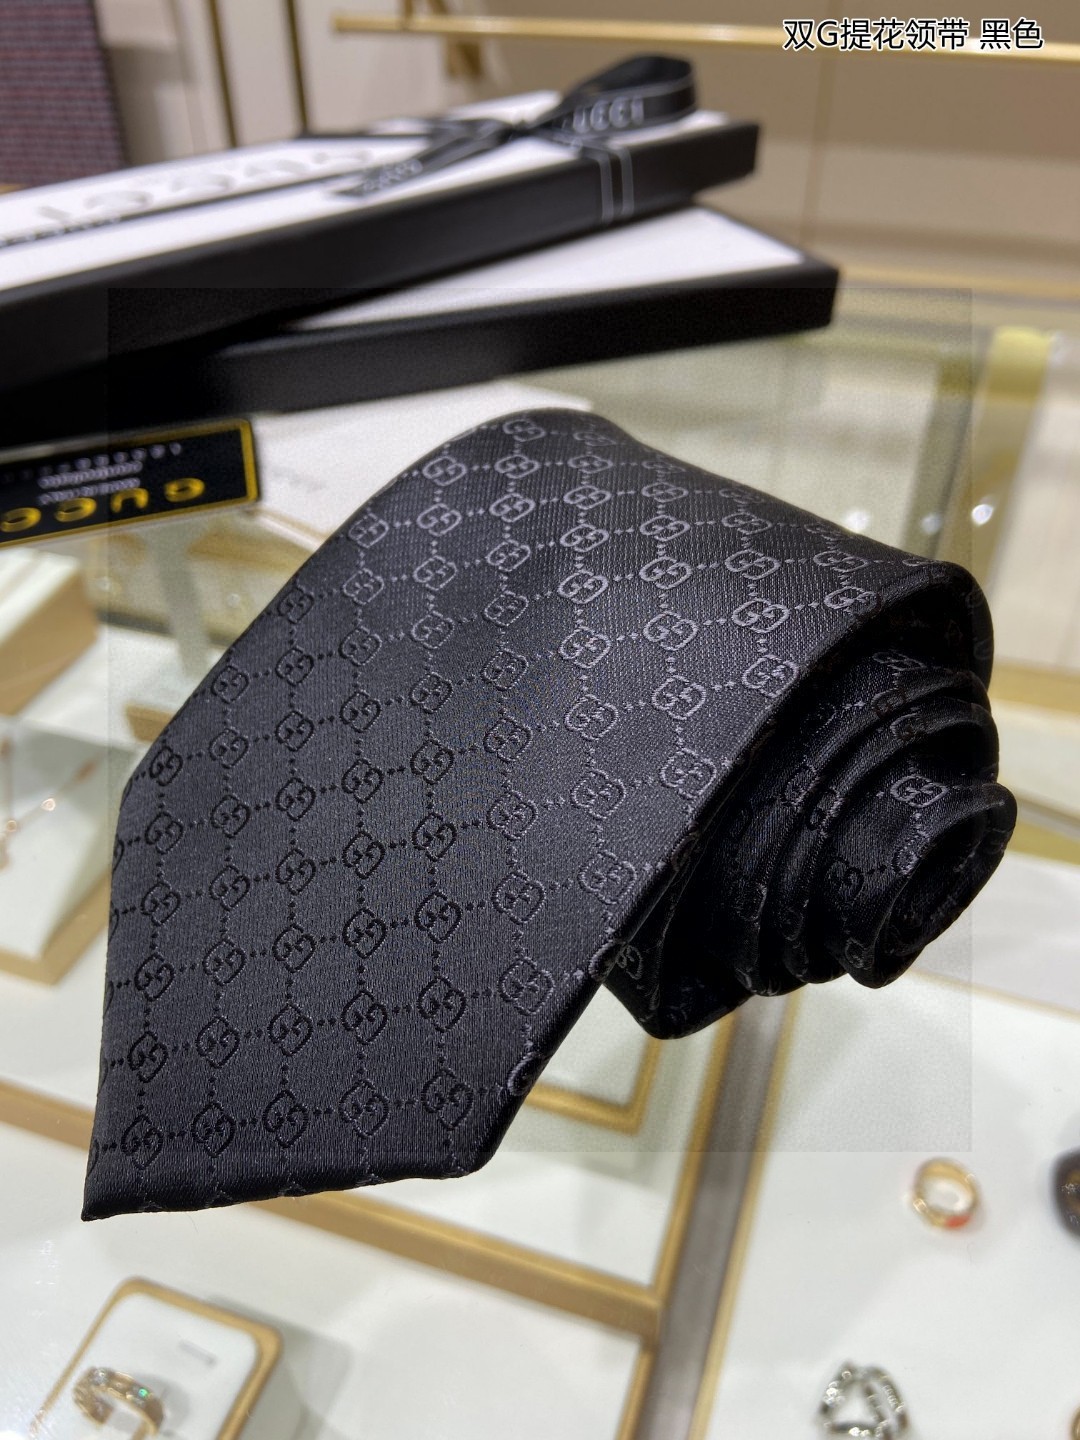 特价G家男士领带系列双G提花领带稀有采用经典小GLOGO提花展现精湛手工与时尚优雅的理想选择这款领带将标